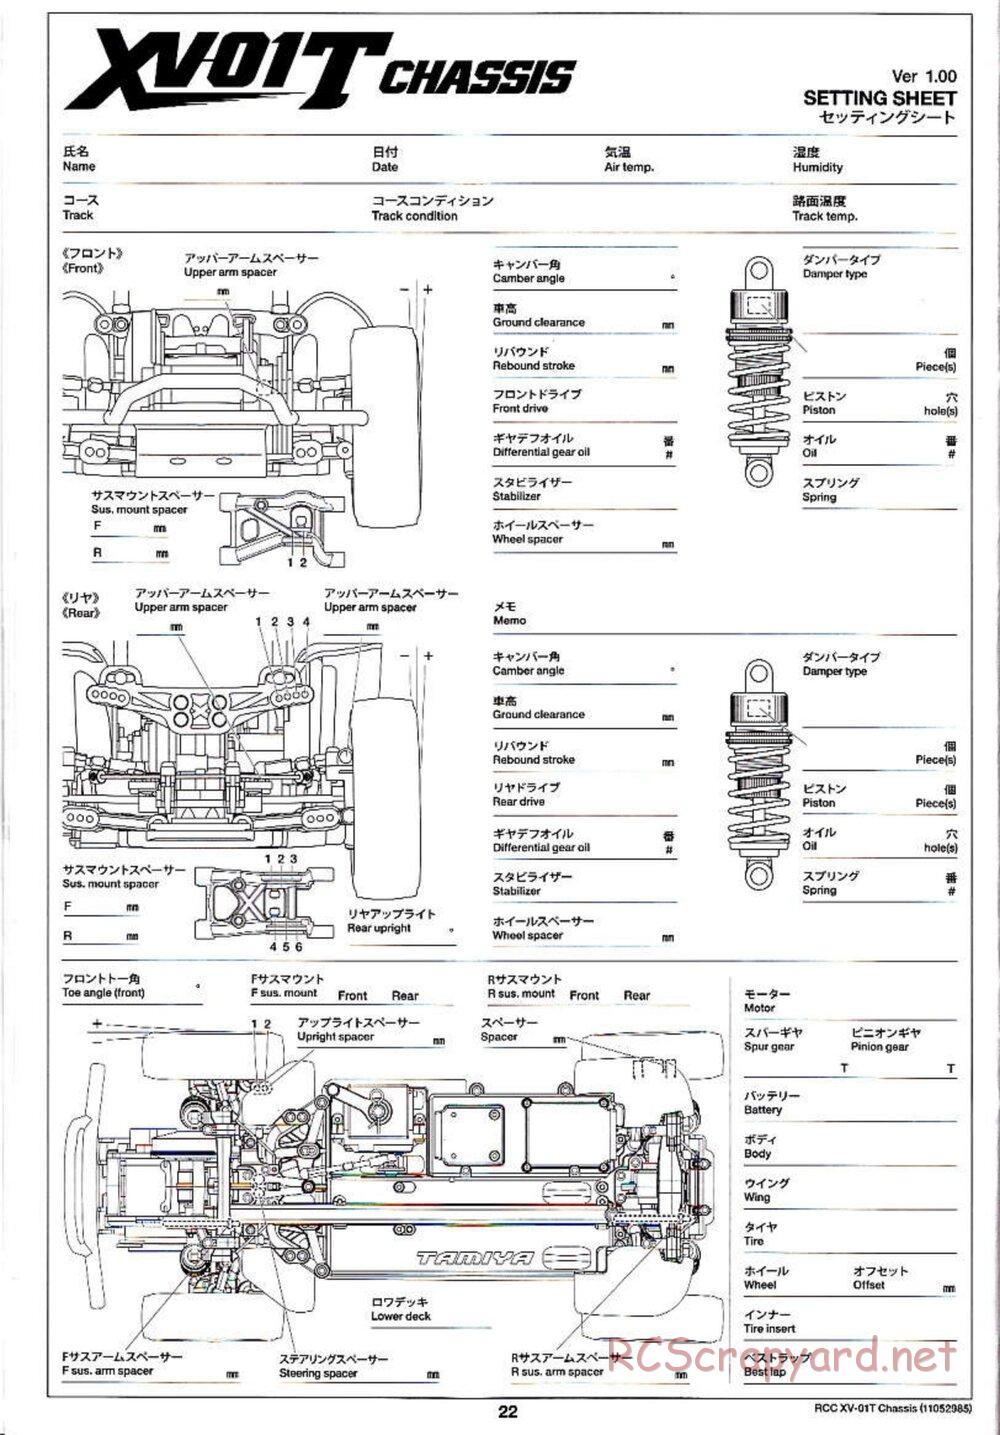 Tamiya - XV-01T Chassis - Manual - Page 22